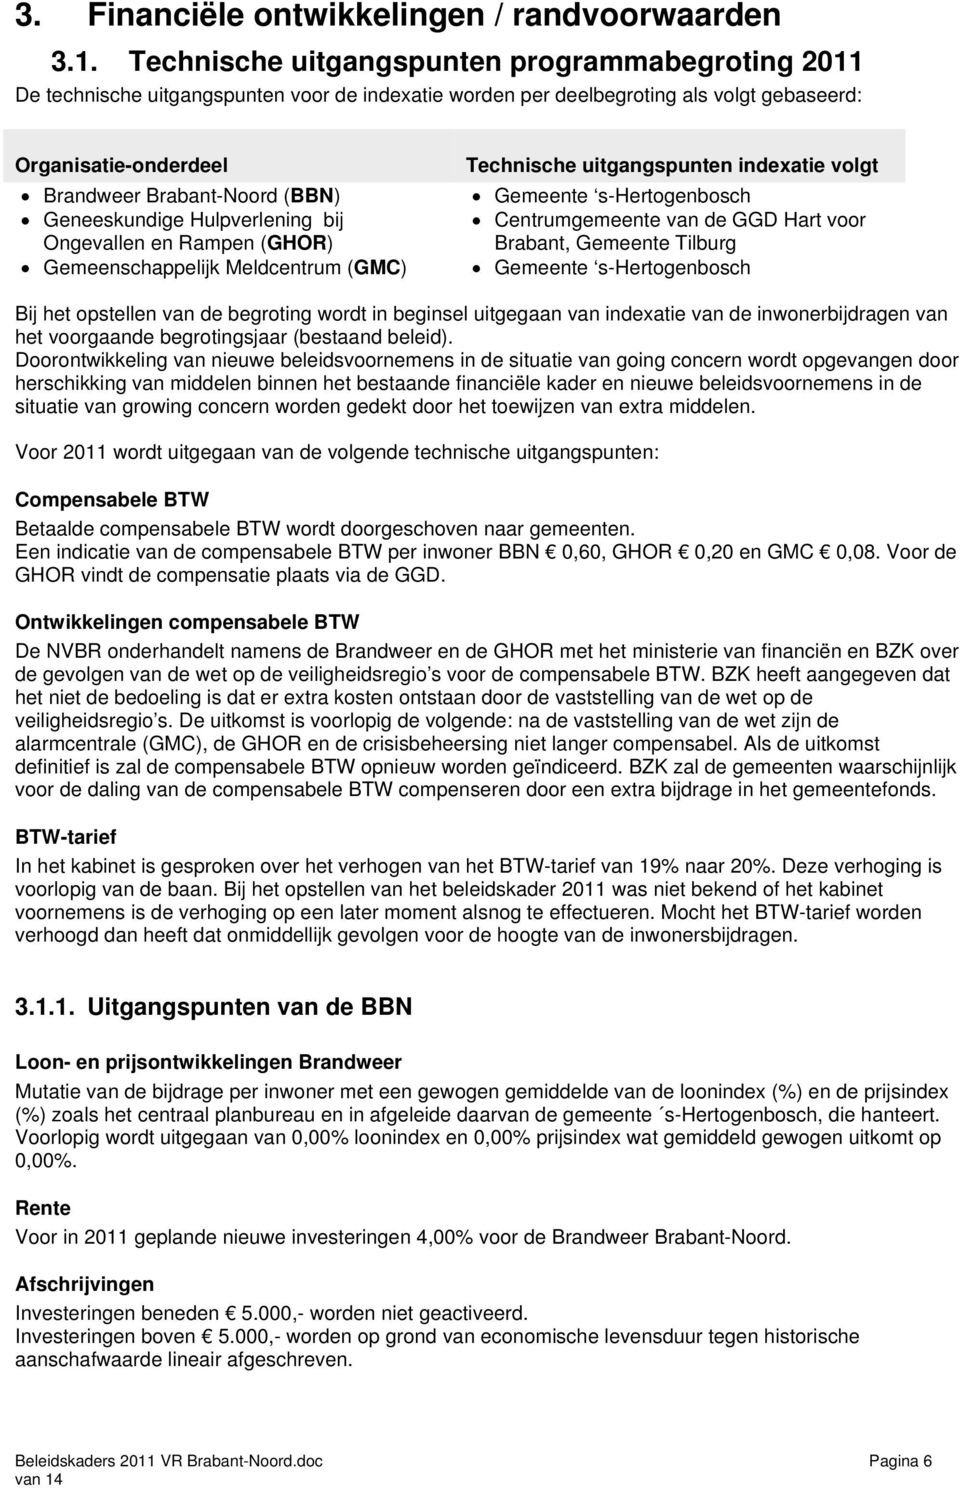 Geneeskundige Hulpverlening bij Ongevallen en Rampen (GHOR) Gemeenschappelijk Meldcentrum (GMC) Technische uitgangspunten indexatie volgt Gemeente s-hertogenbosch Centrumgemeente van de GGD Hart voor